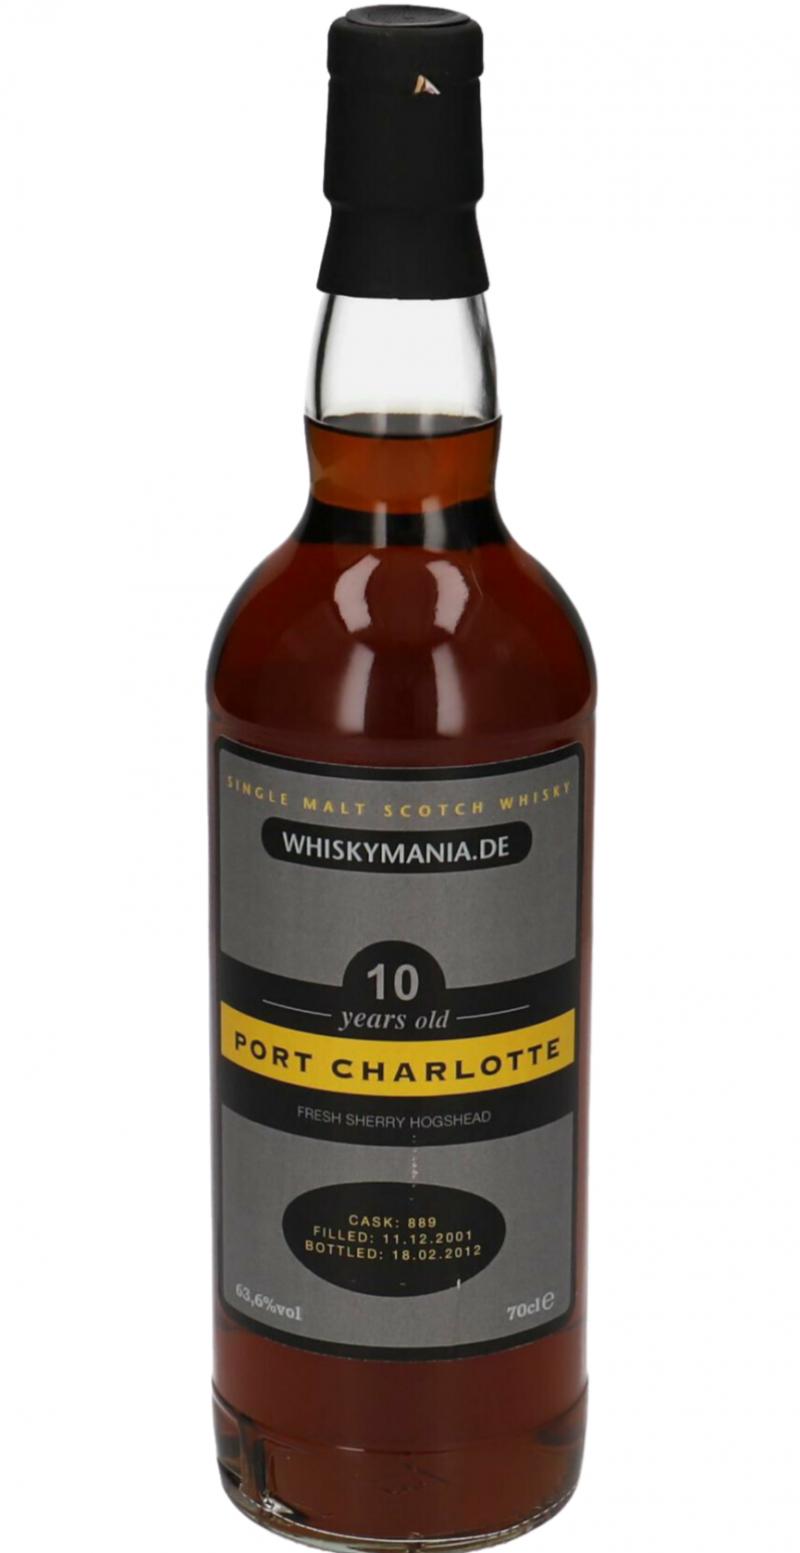 Port Charlotte 2001 Wm.de Private Cask Bottling Fresh Sherry Hogshead #889 63.6% 700ml